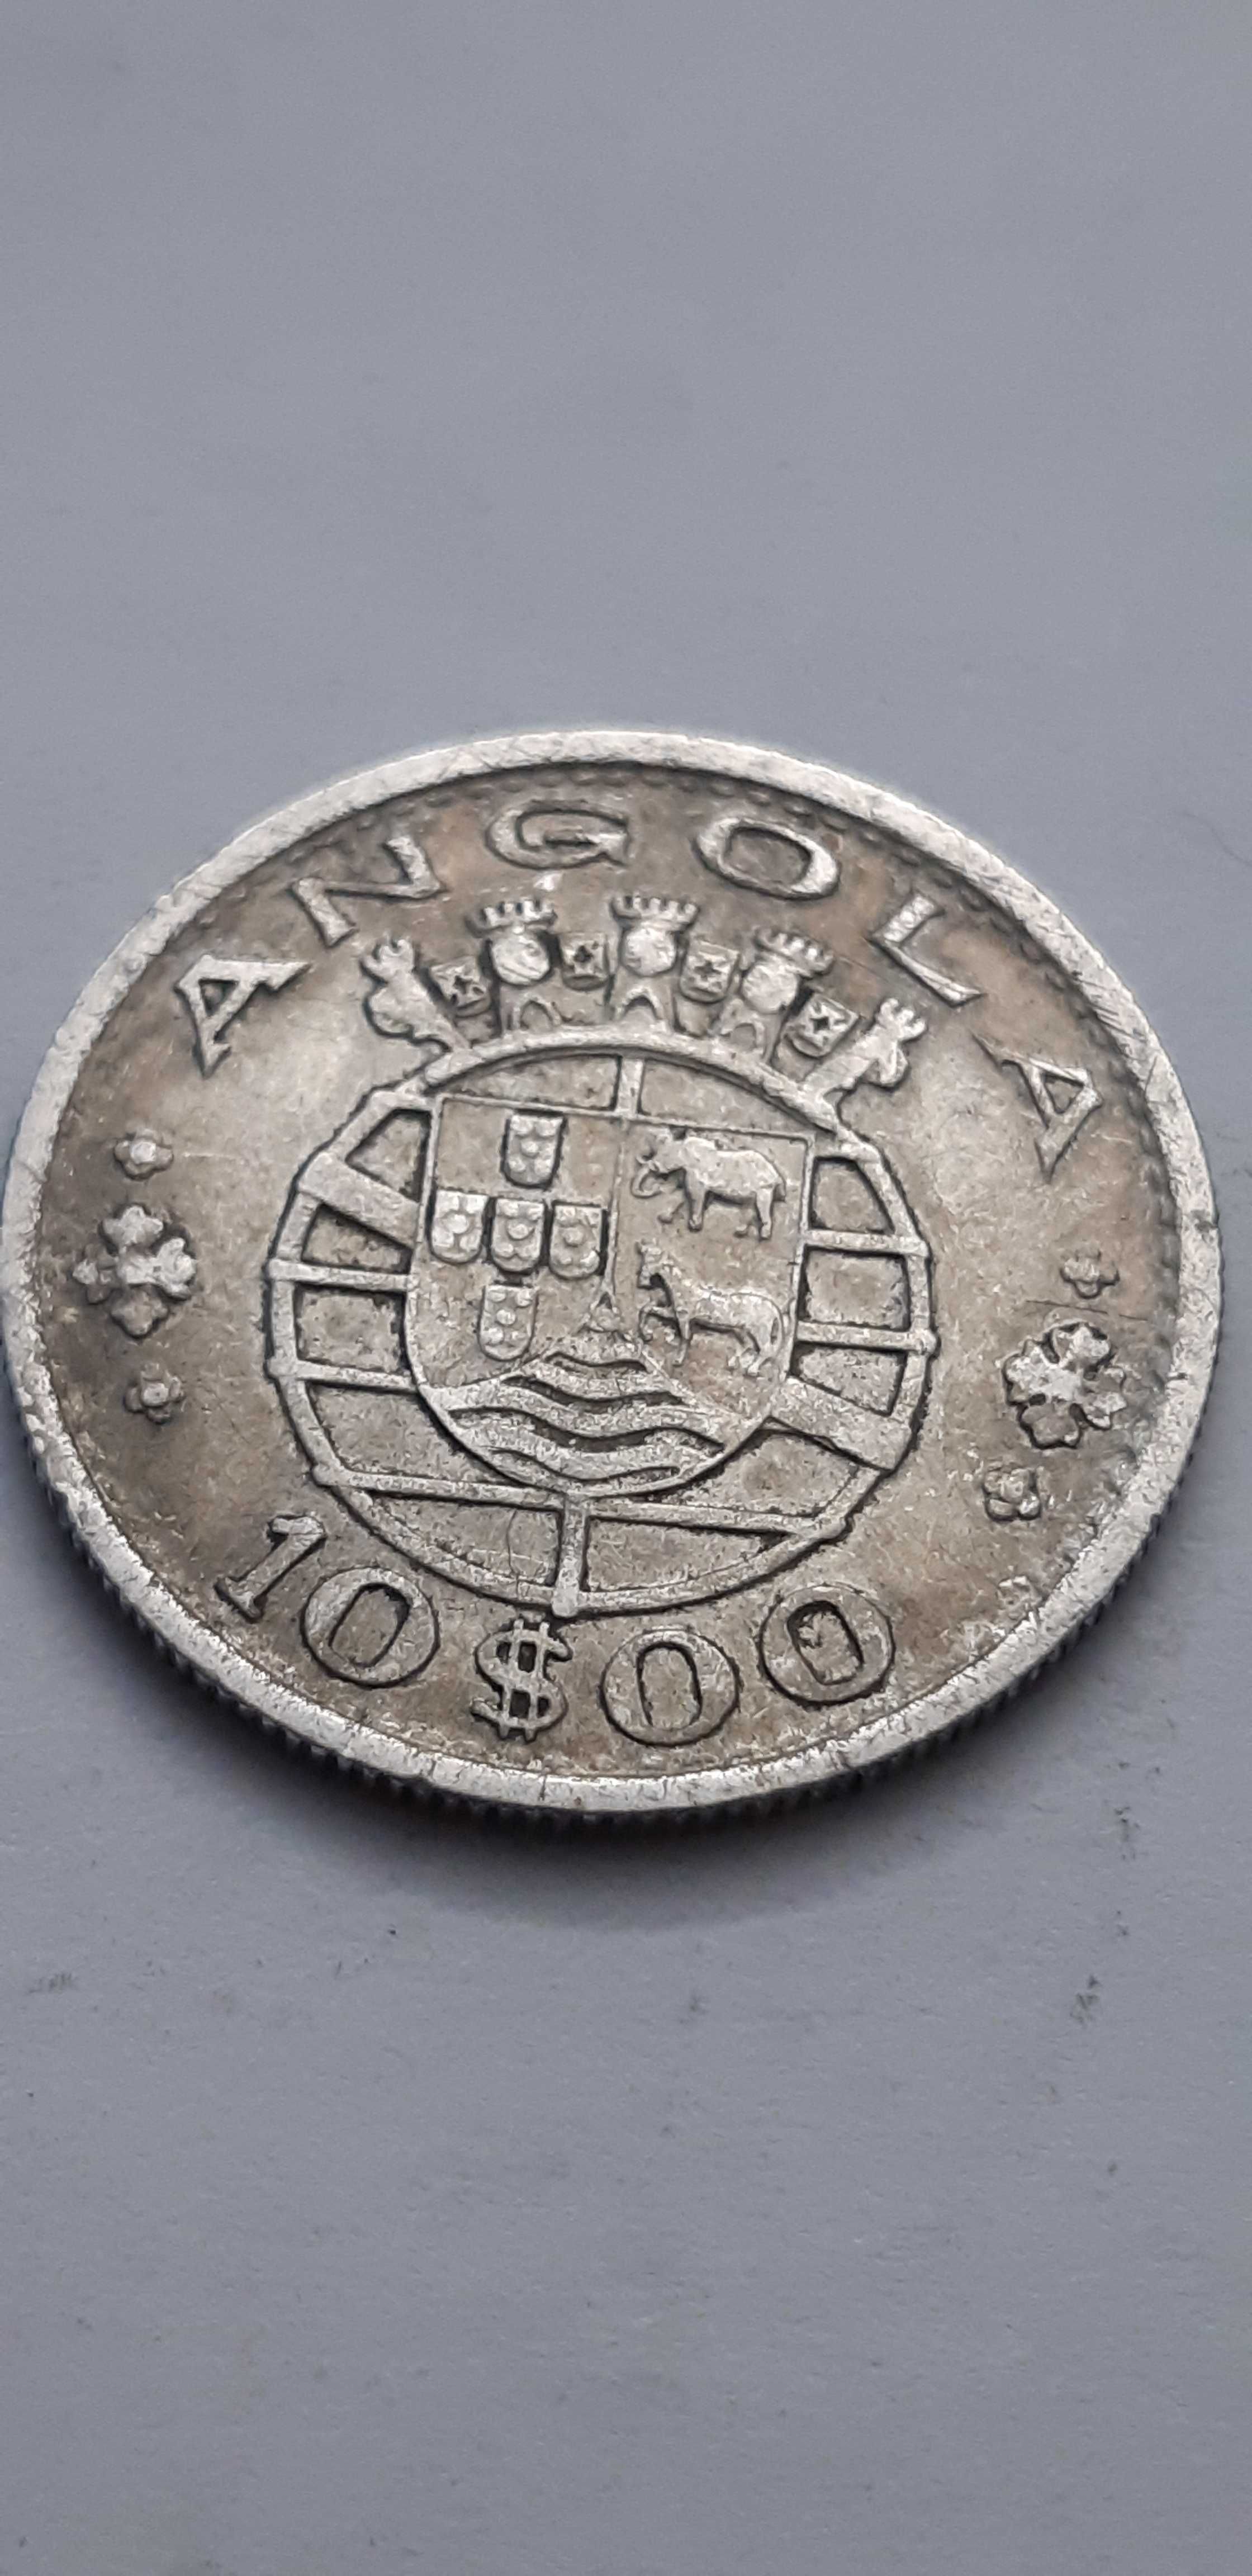 Angola 10 escudo 1952 - srebro - real foto-2